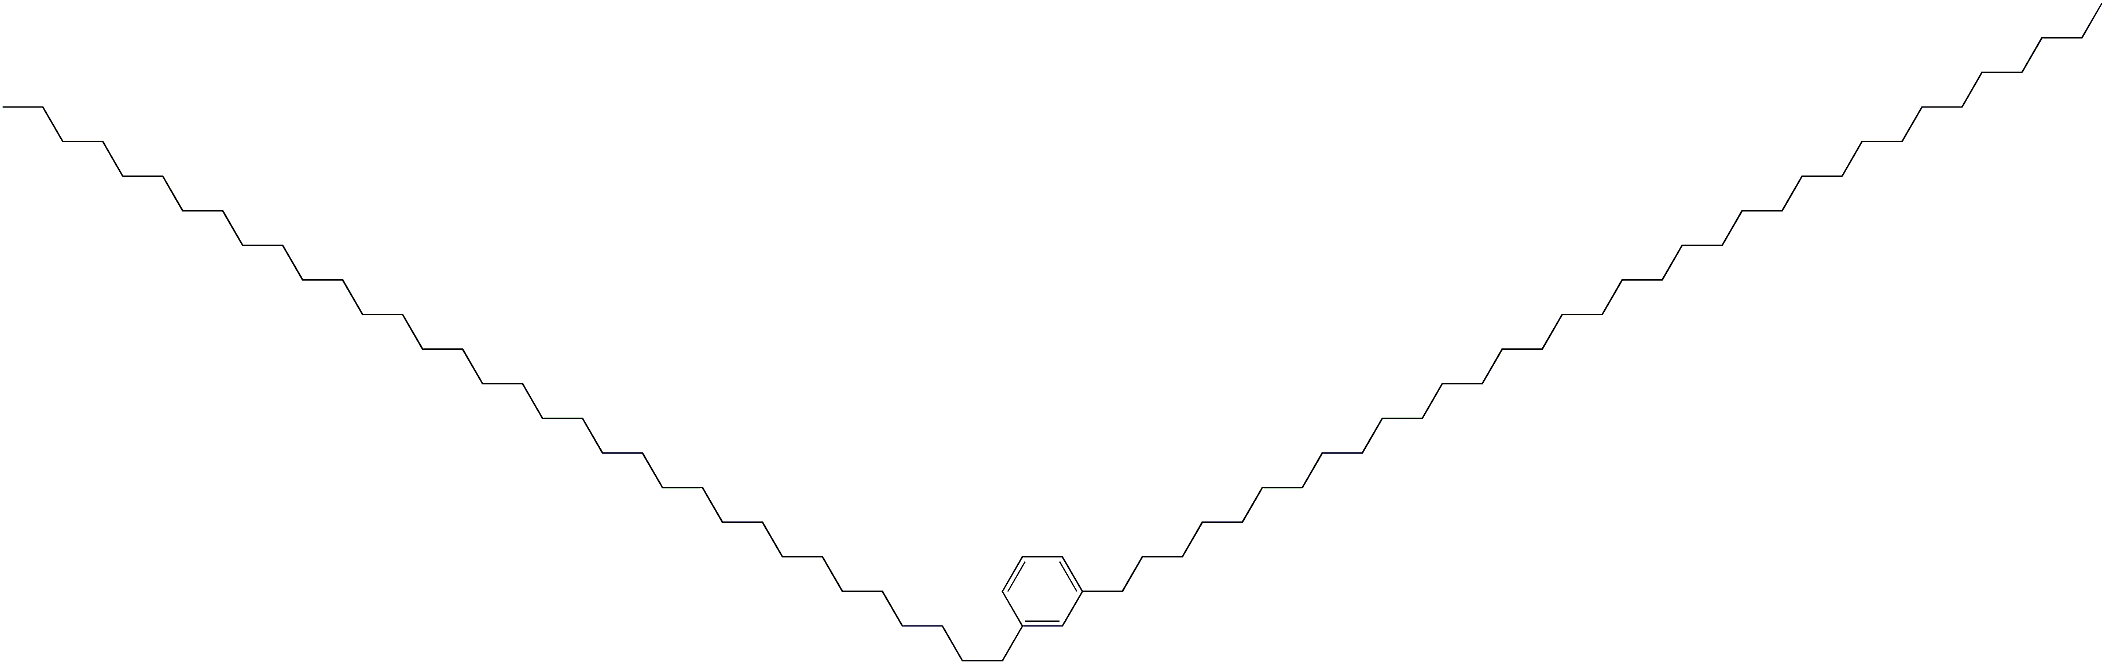 1,3-Di(tetratriacontan-1-yl)benzene